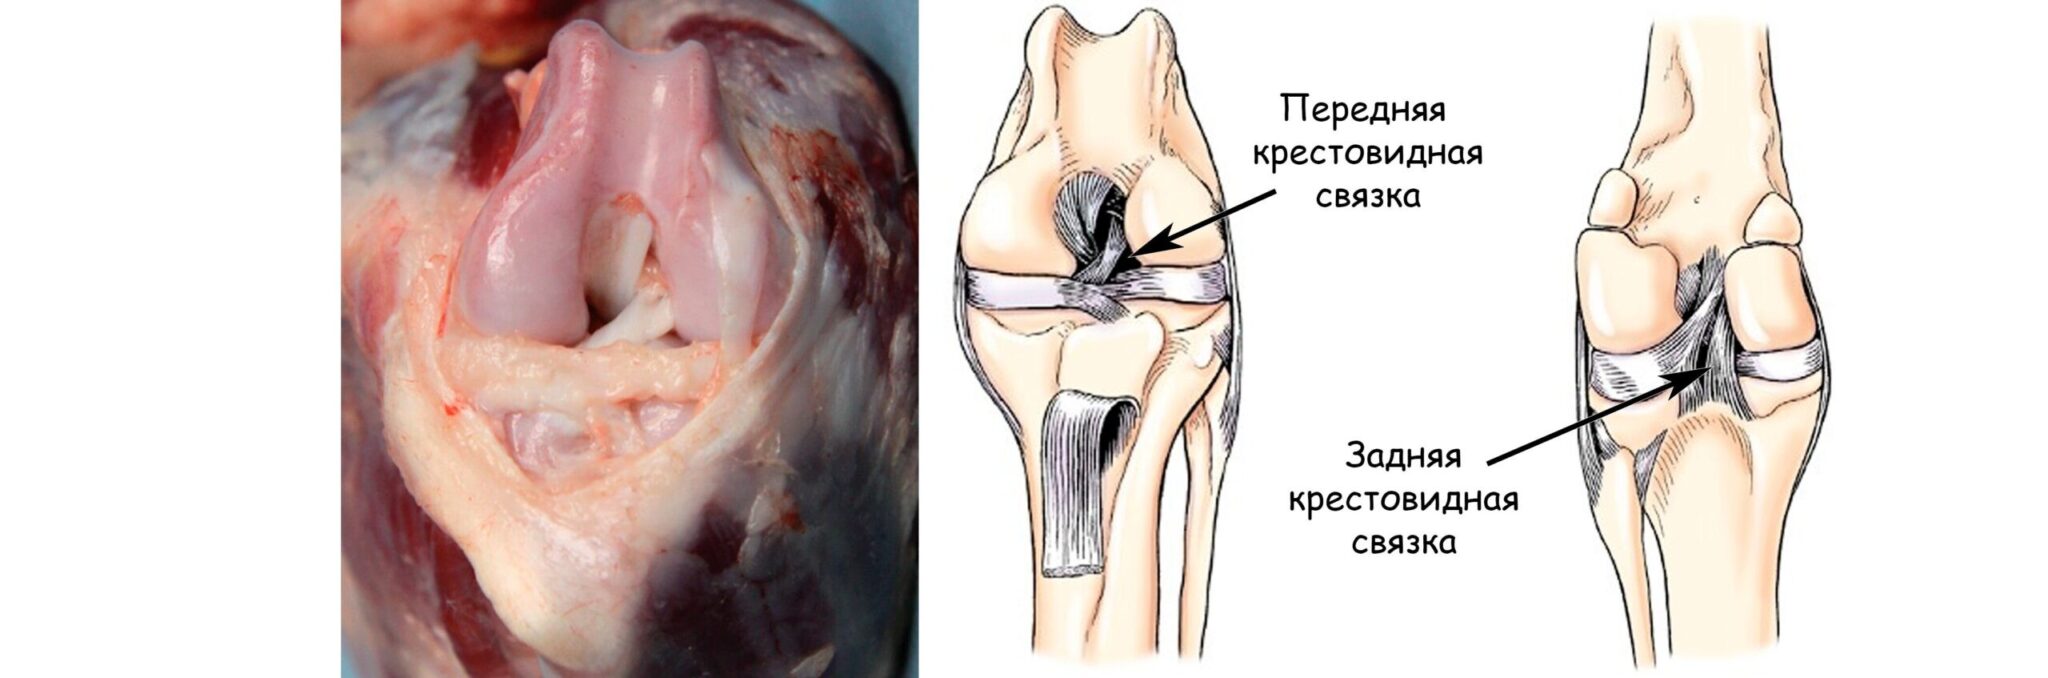 Анатомия коленного сустава и крестовидных связок у собак